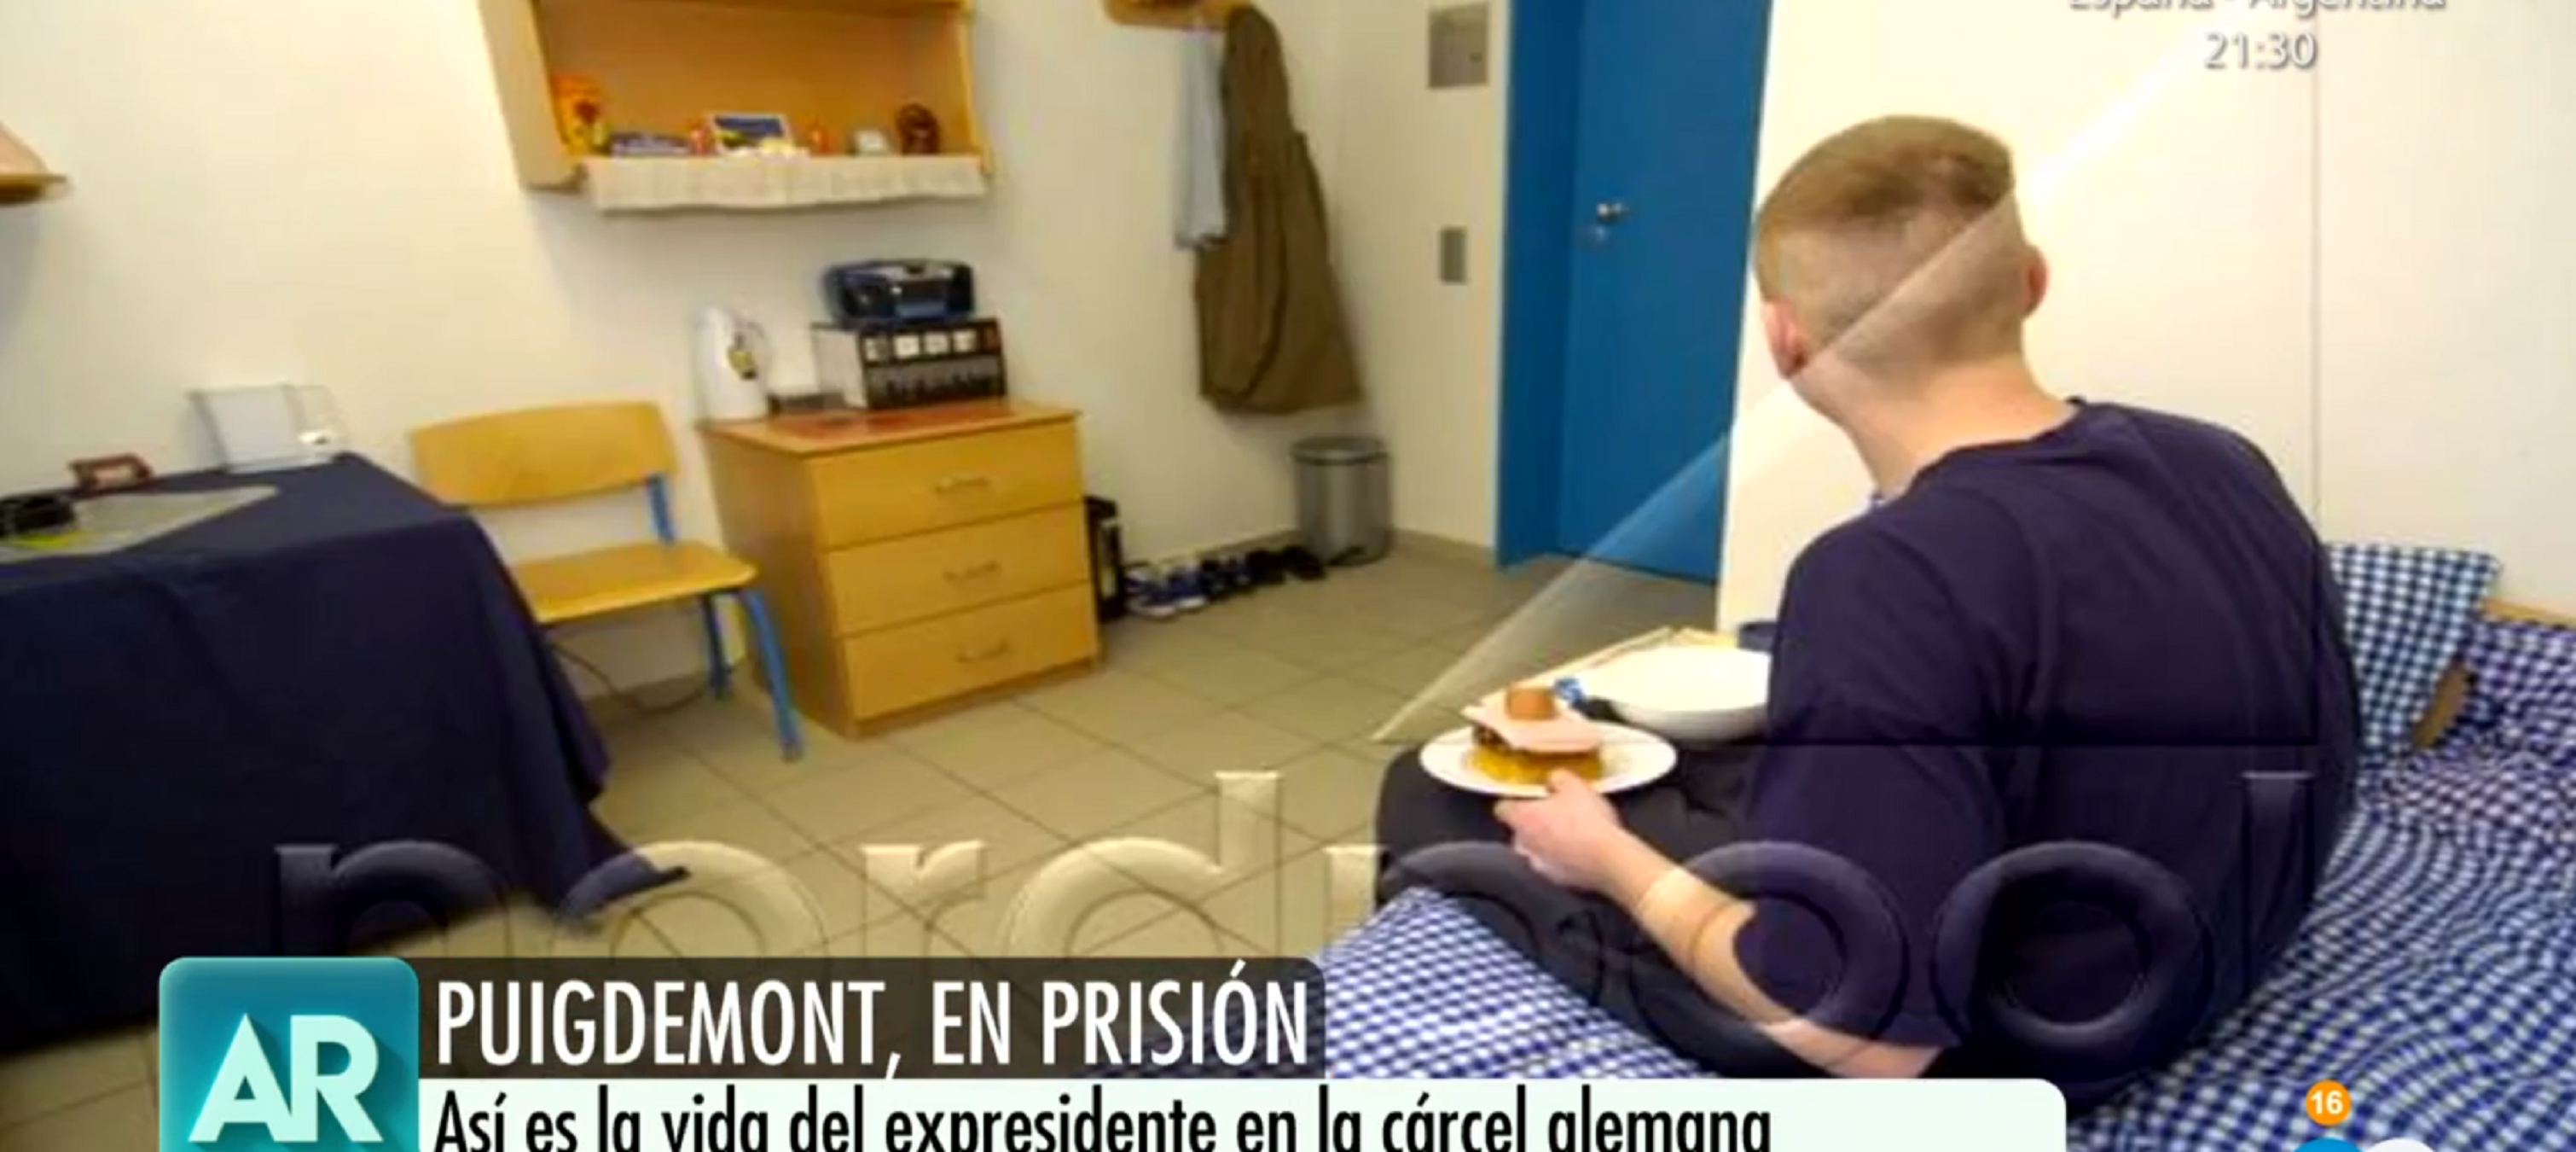 El morbo de Ana Rosa mostrando la celda de la cárcel alemana de Puigdemont